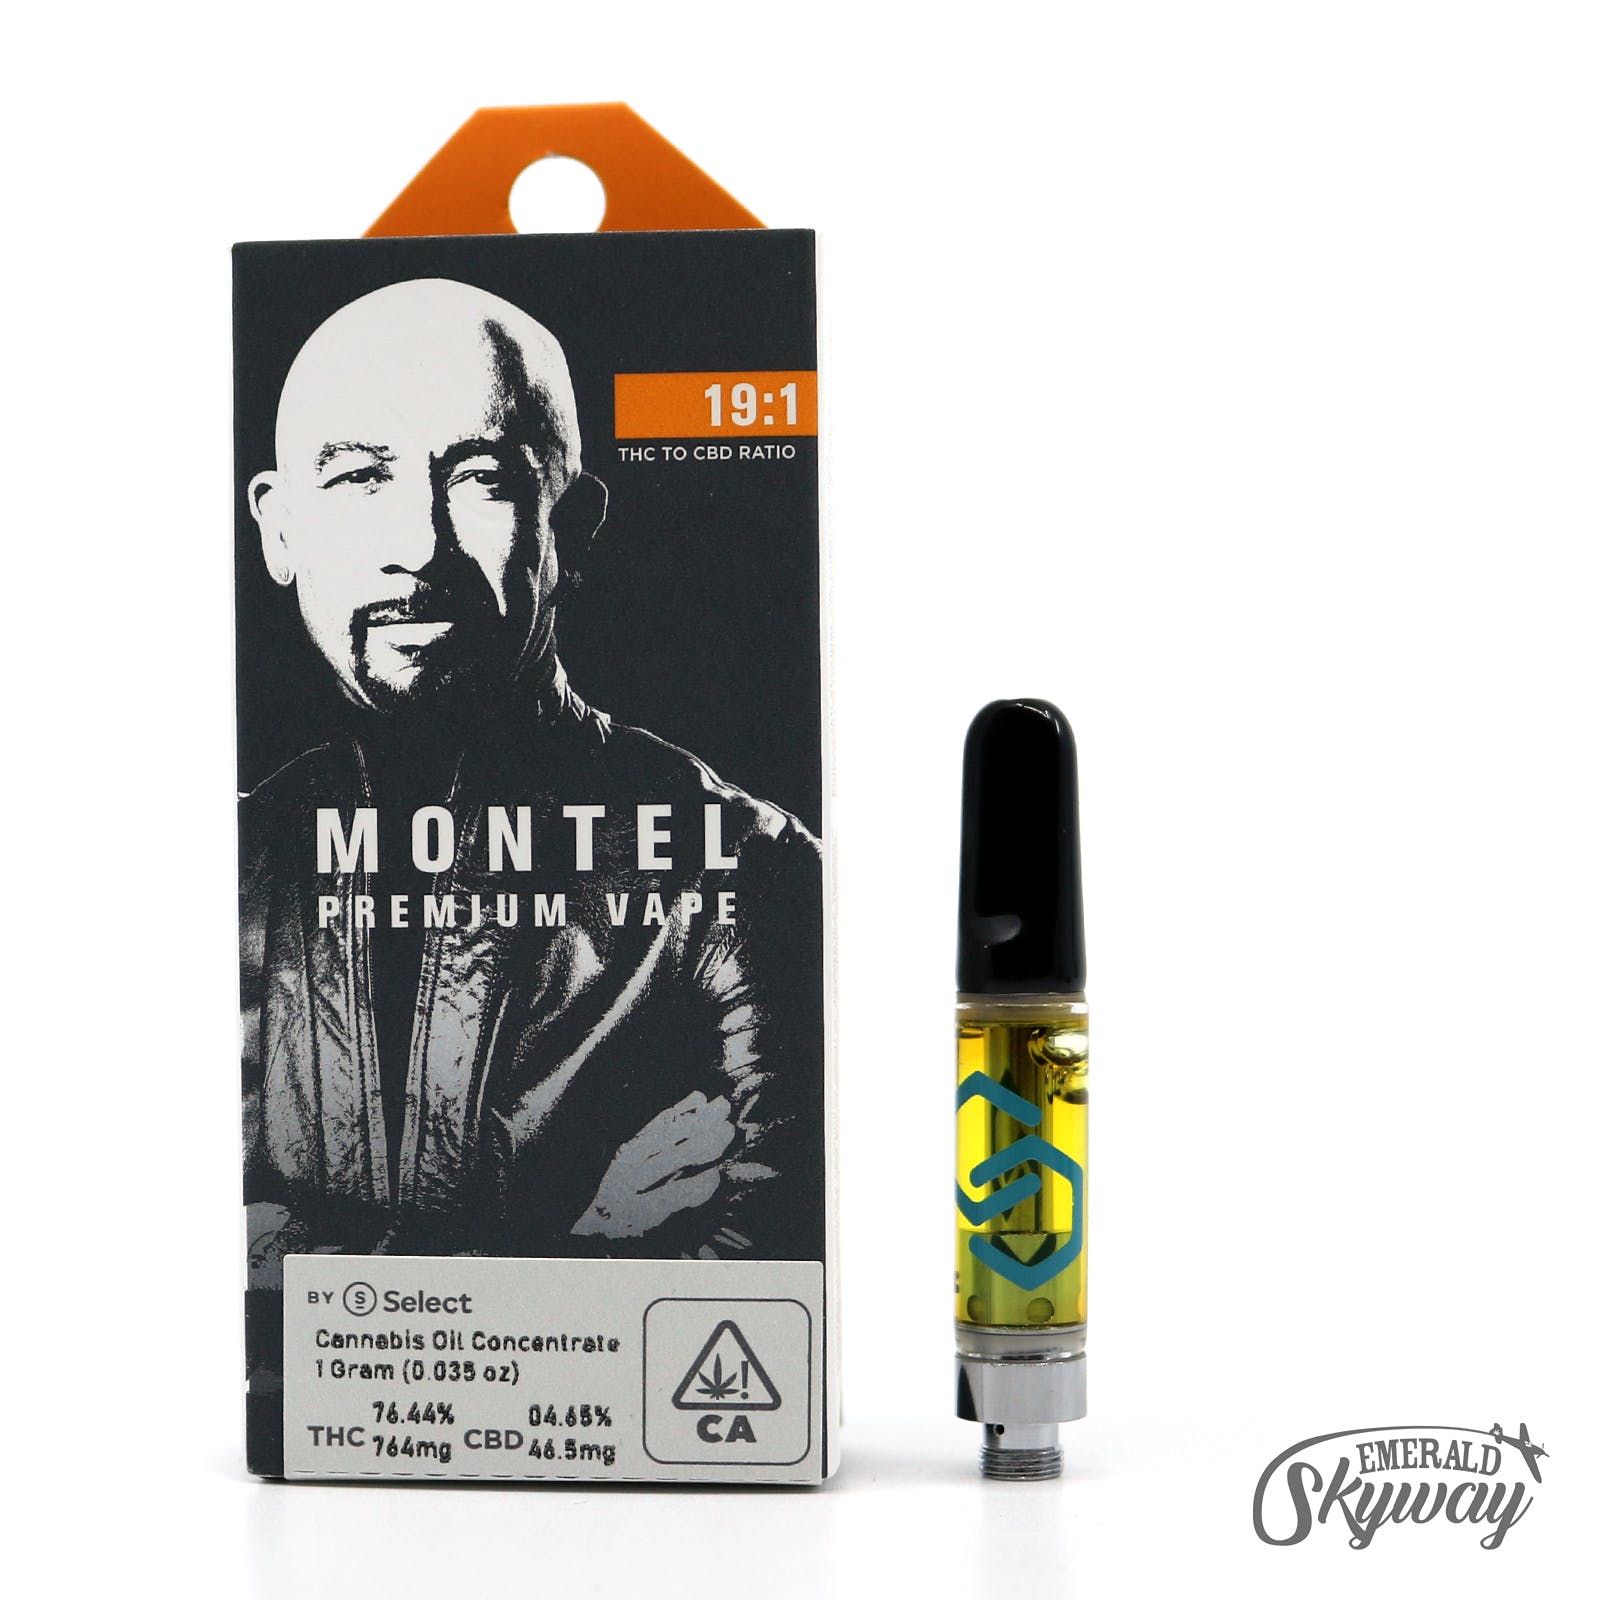 Montel by Select: Don Drapper 19:1 Cartridge - 1,000mg